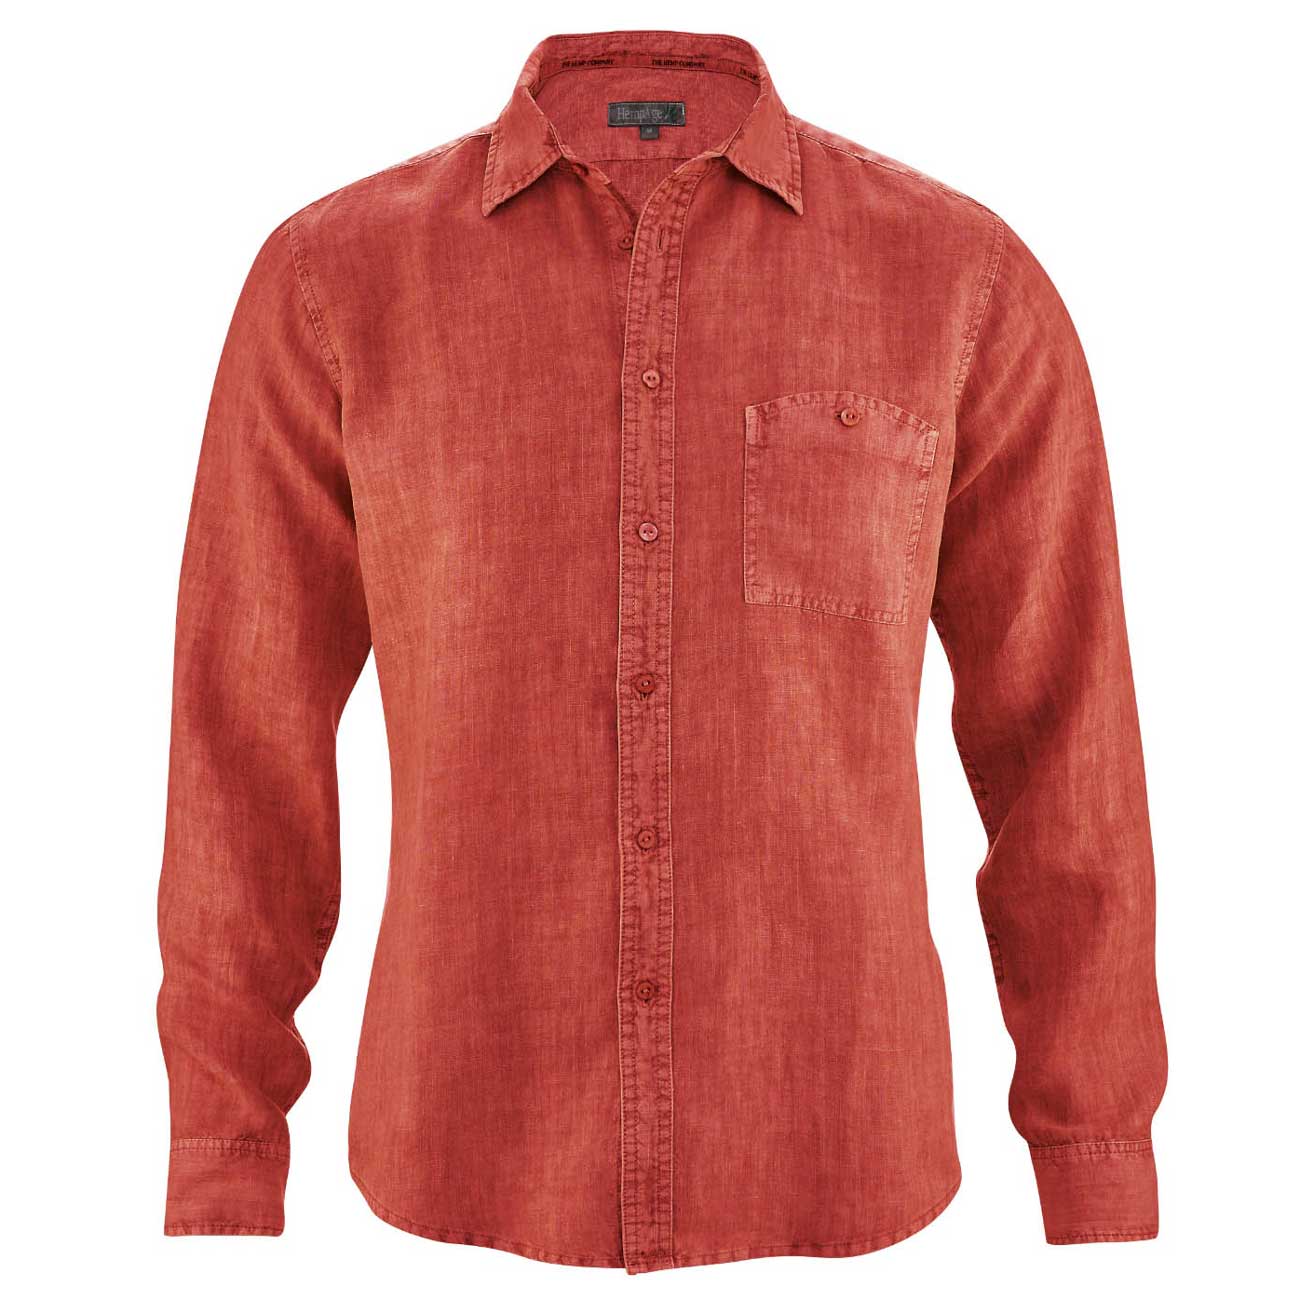 verachten Heel mode Rood overhemd van honderd procent hennep